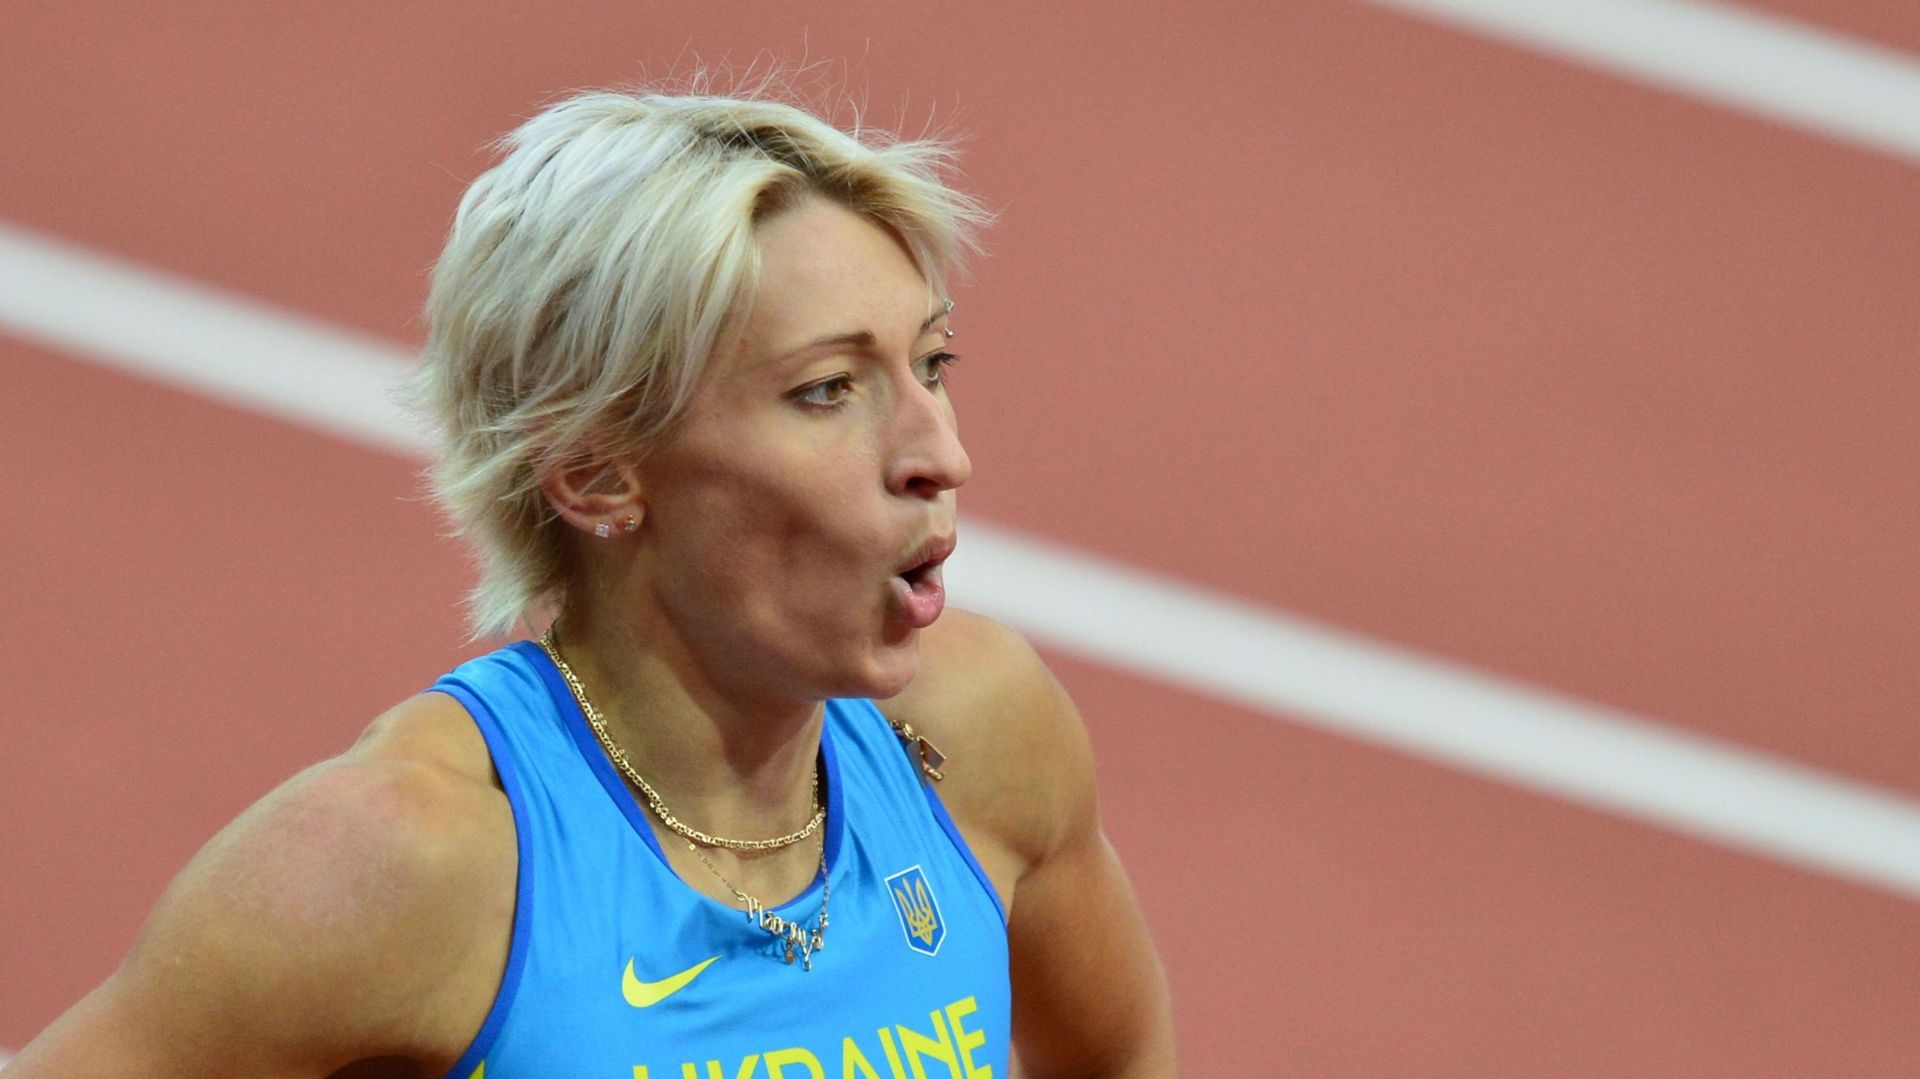 Athlétisme: La sprinteuse ukrainienne Ryemyen suspendue pour dopage